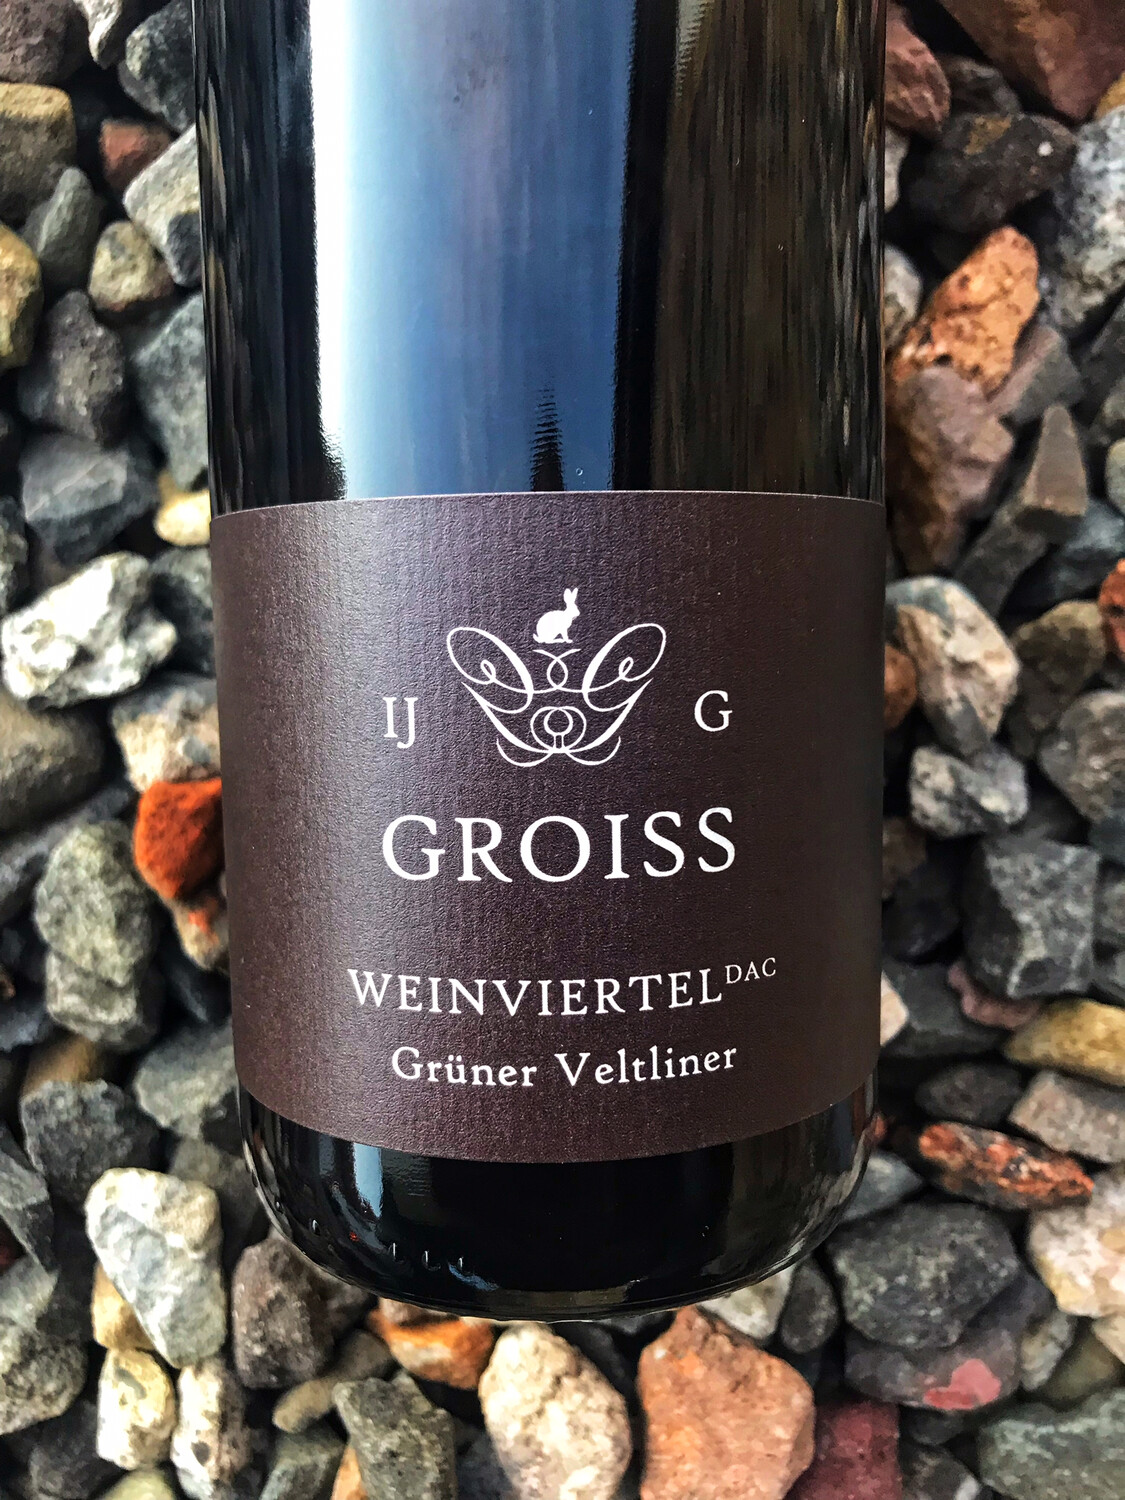 Gruner Veltliner Ingrid Groiss 2021